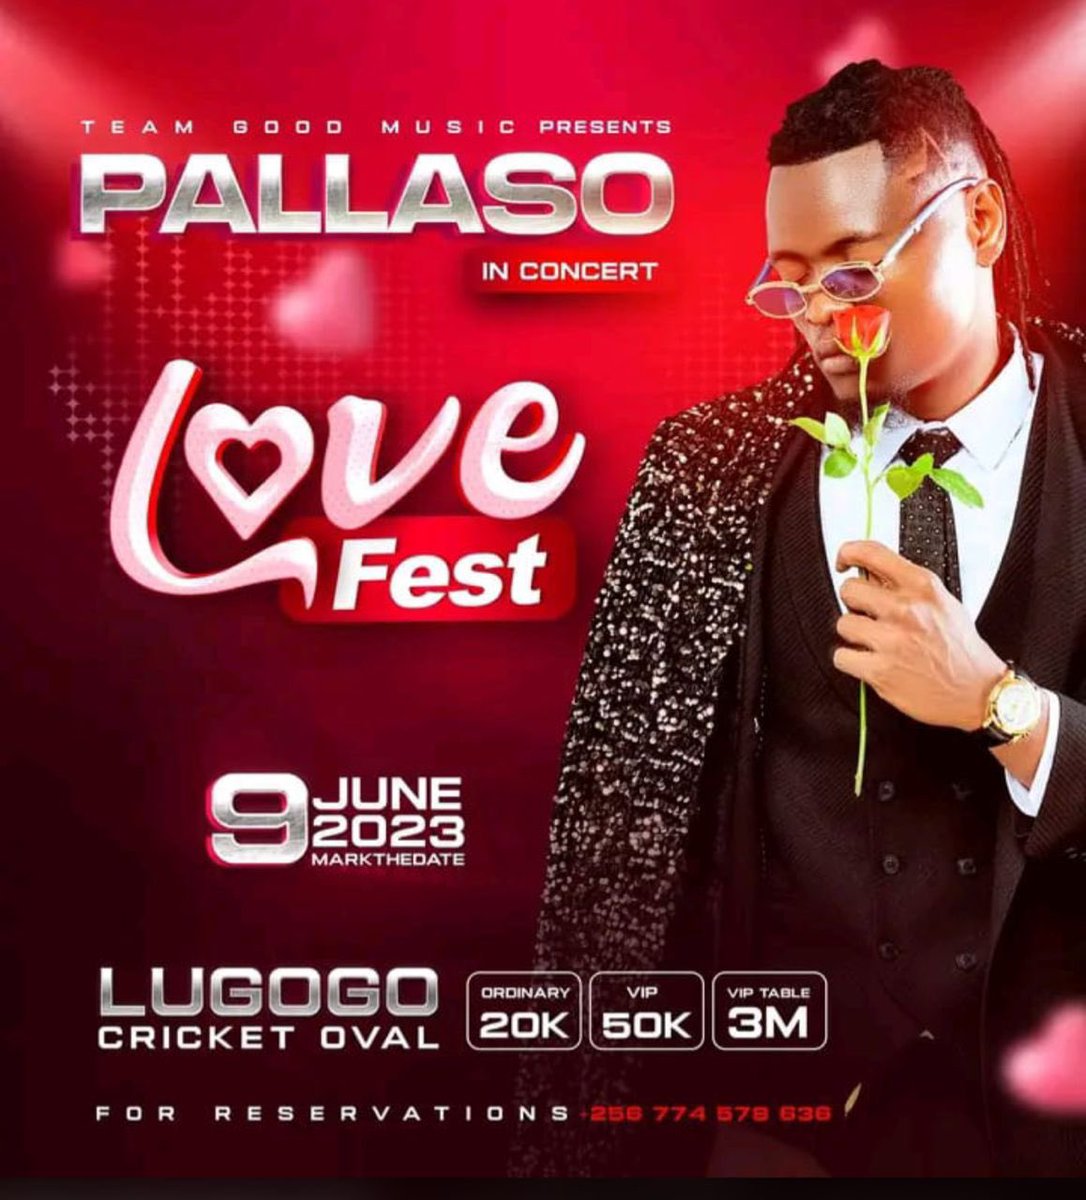 It’s love fest bby 9thjune #PallasoLoveFestLugogo